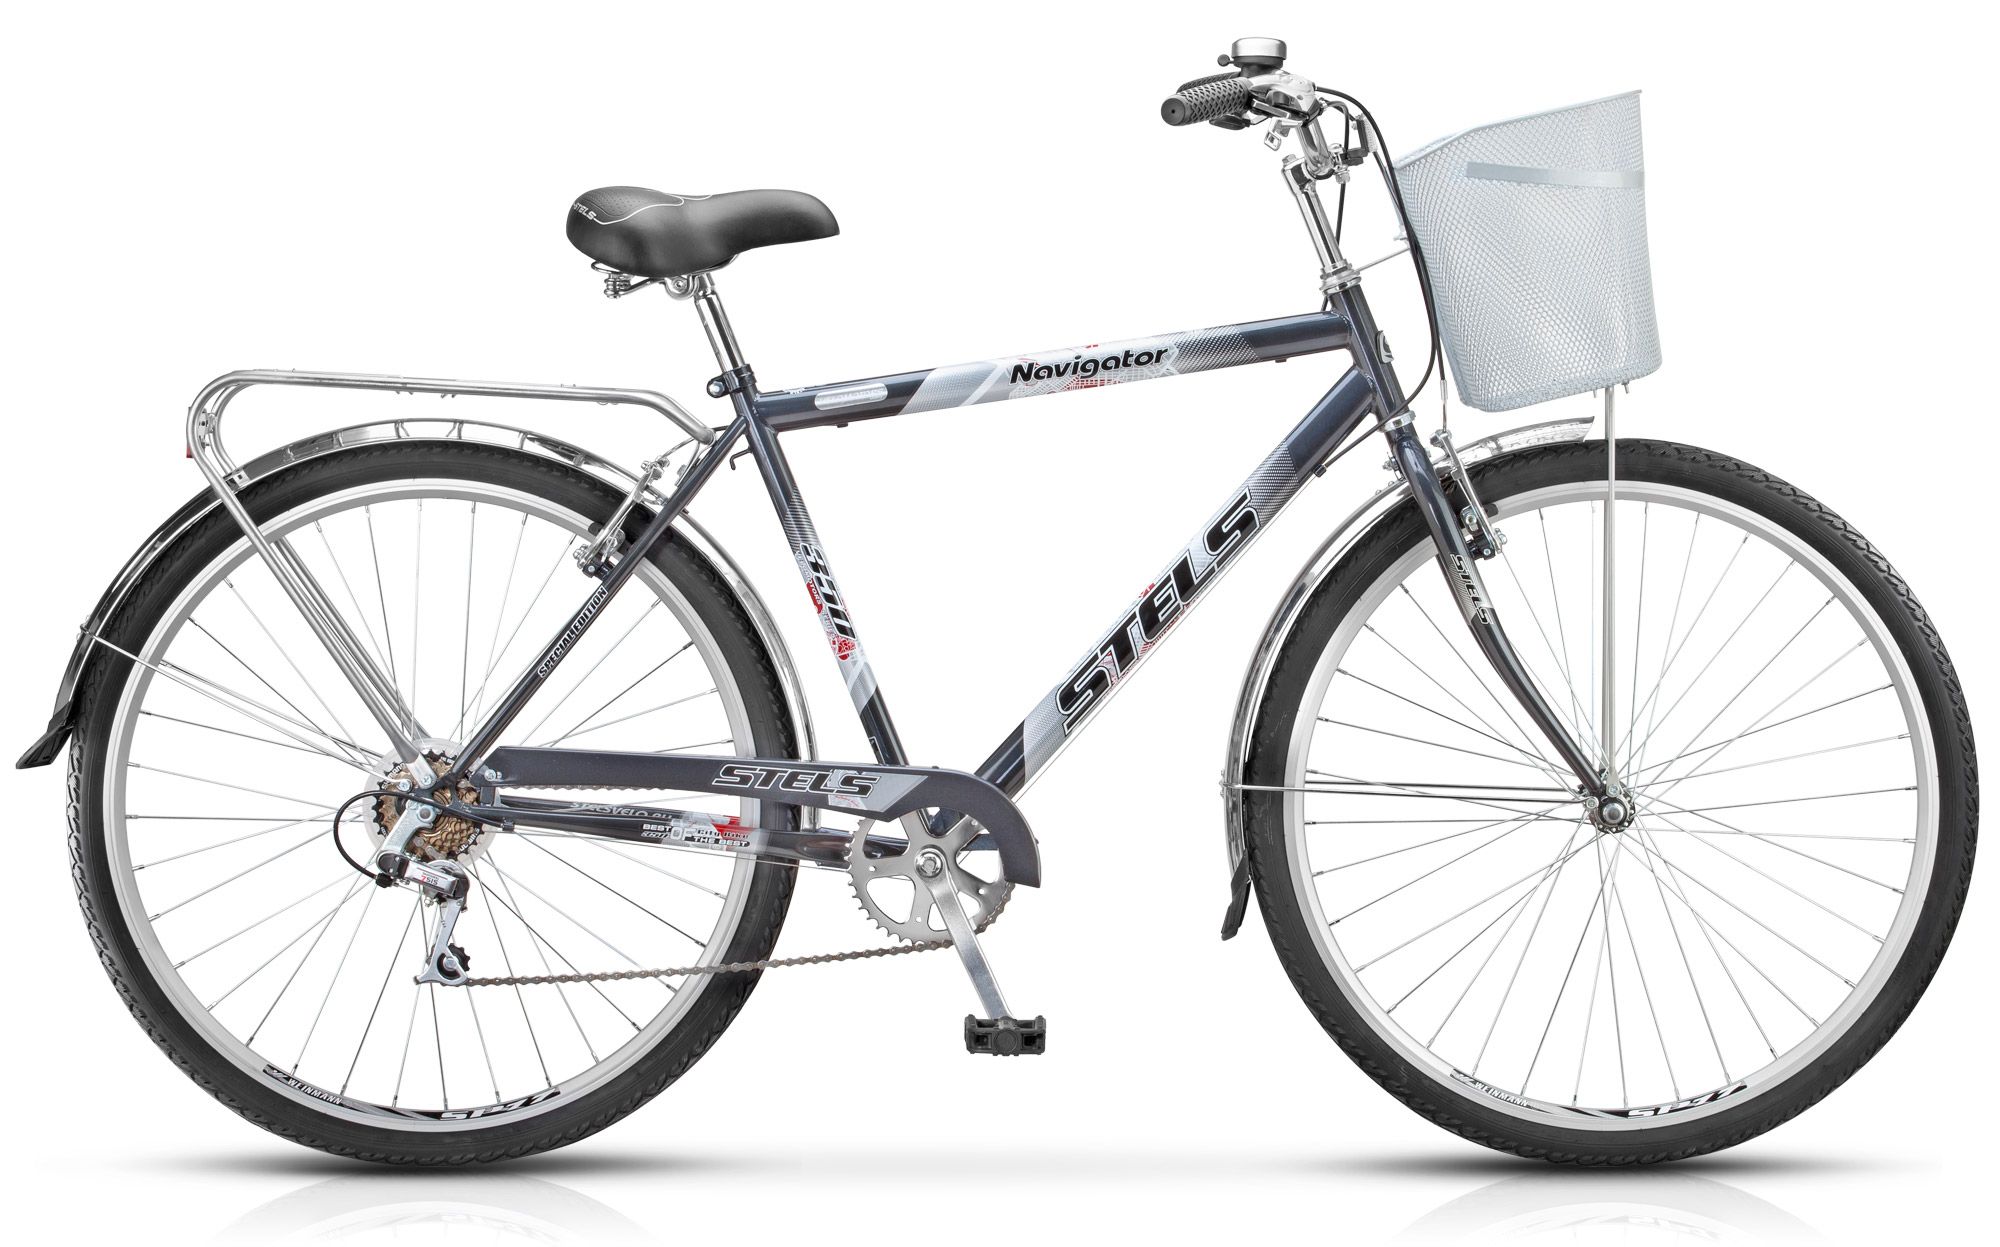  Отзывы о Городском велосипеде Stels Navigator 350 Gent 28 (Z010) 2018